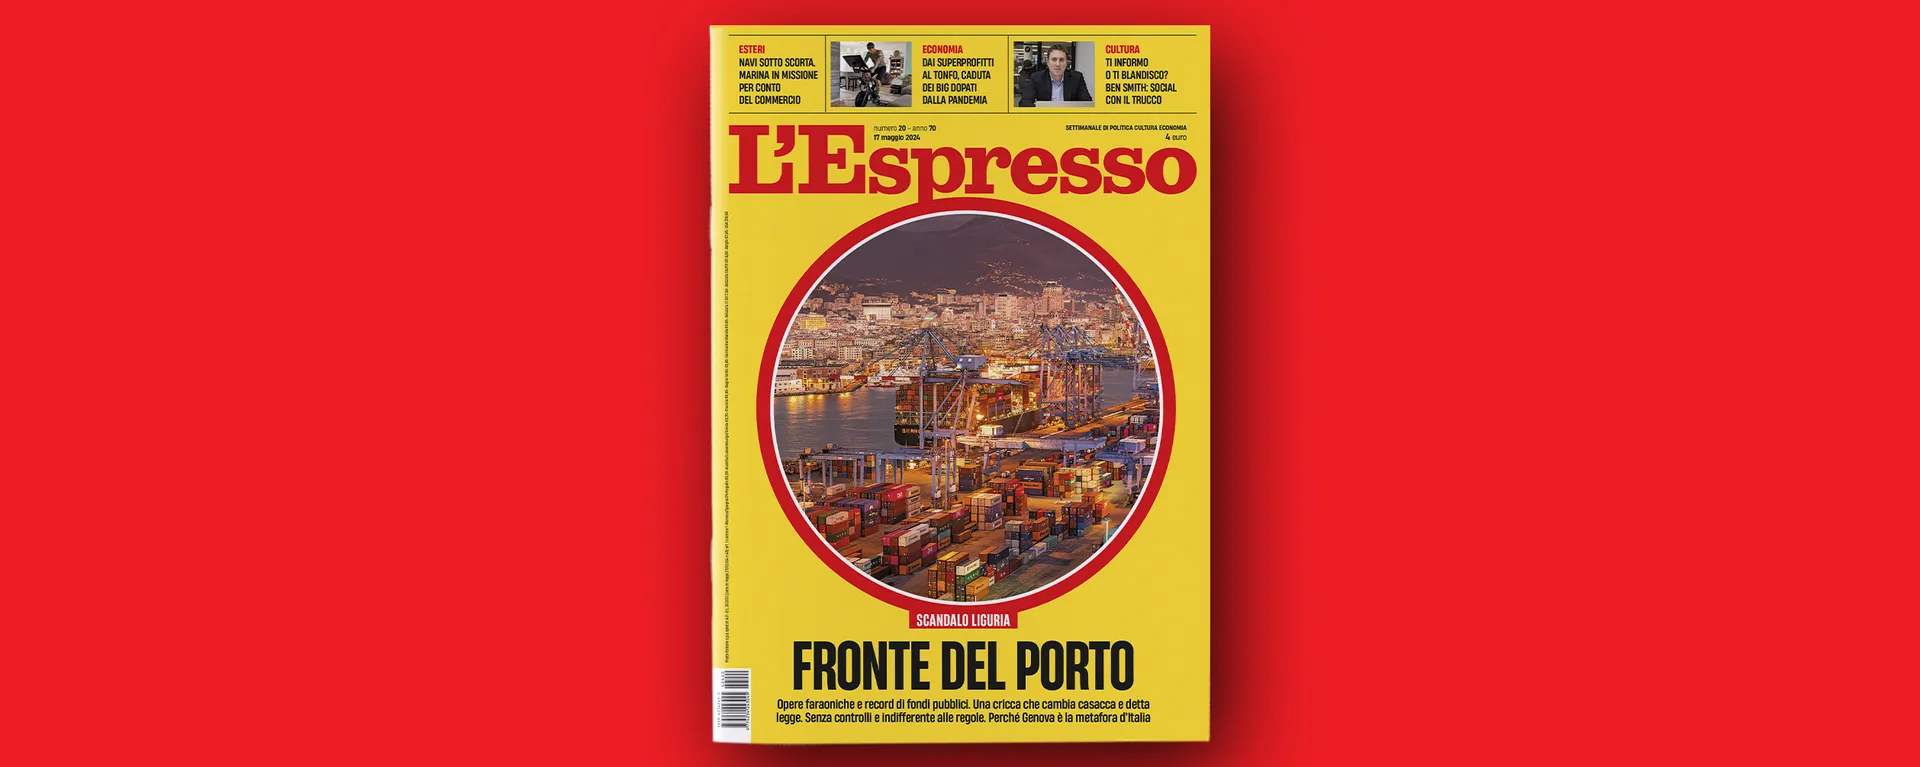 Il fronte del porto, L’Espresso in edicola